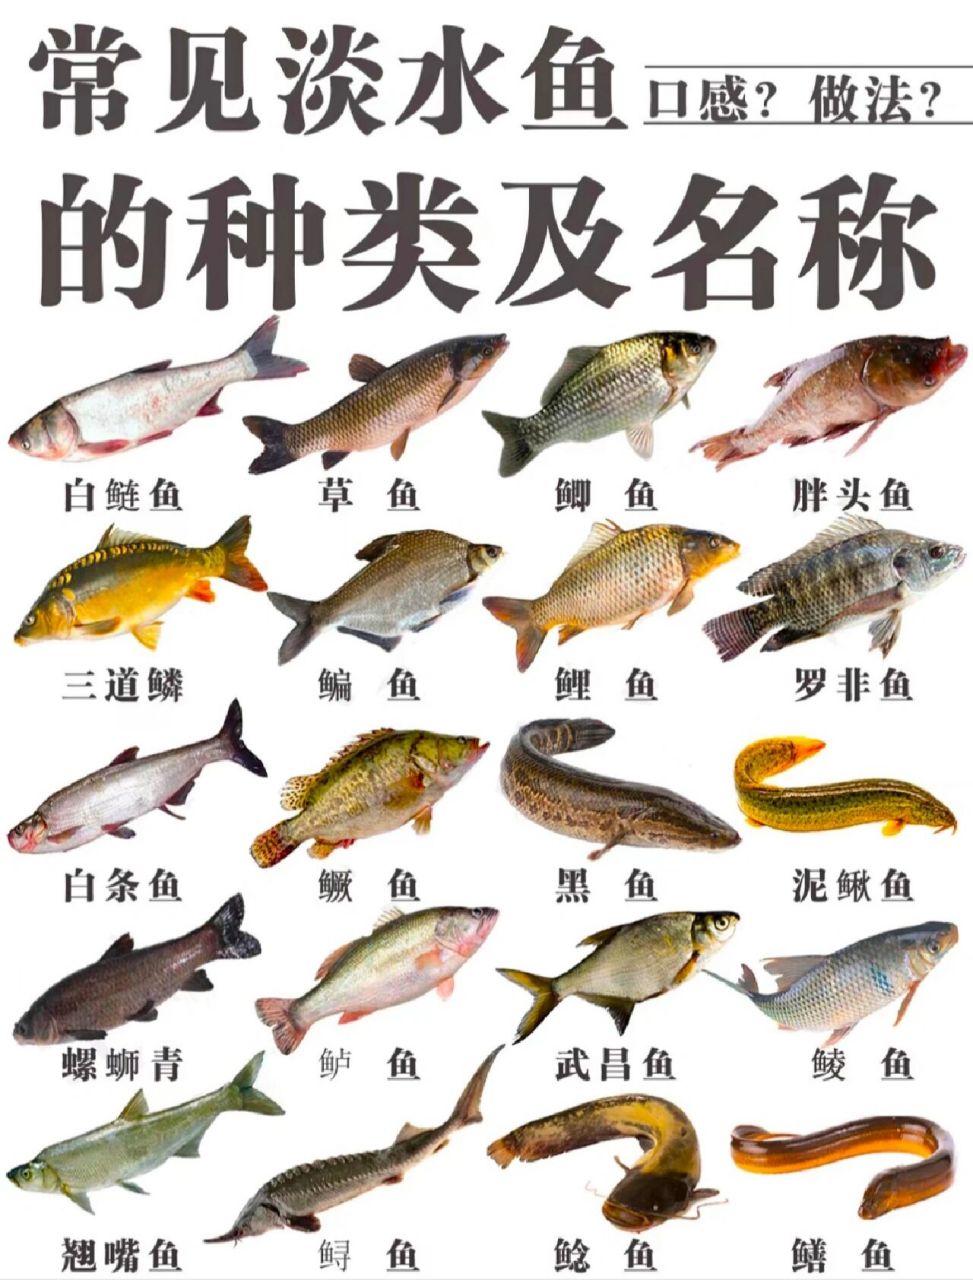 各种鱼类图片及名称图片